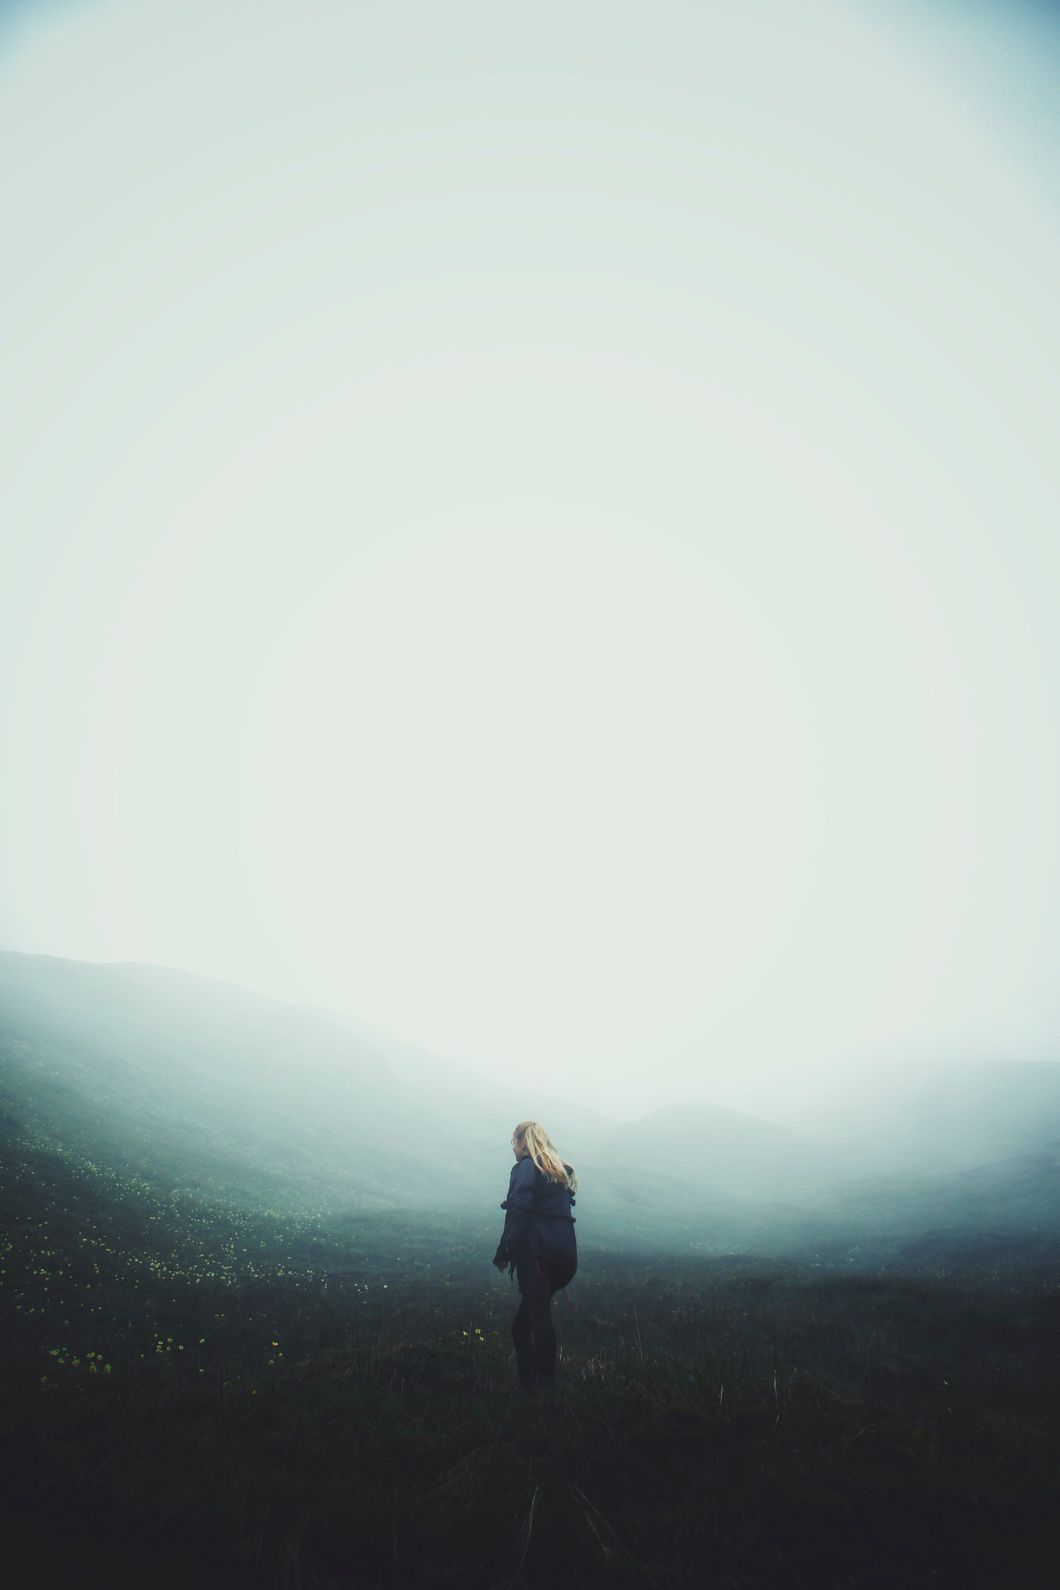 https://www.pexels.com/photo/adult-dark-field-fog-437160/